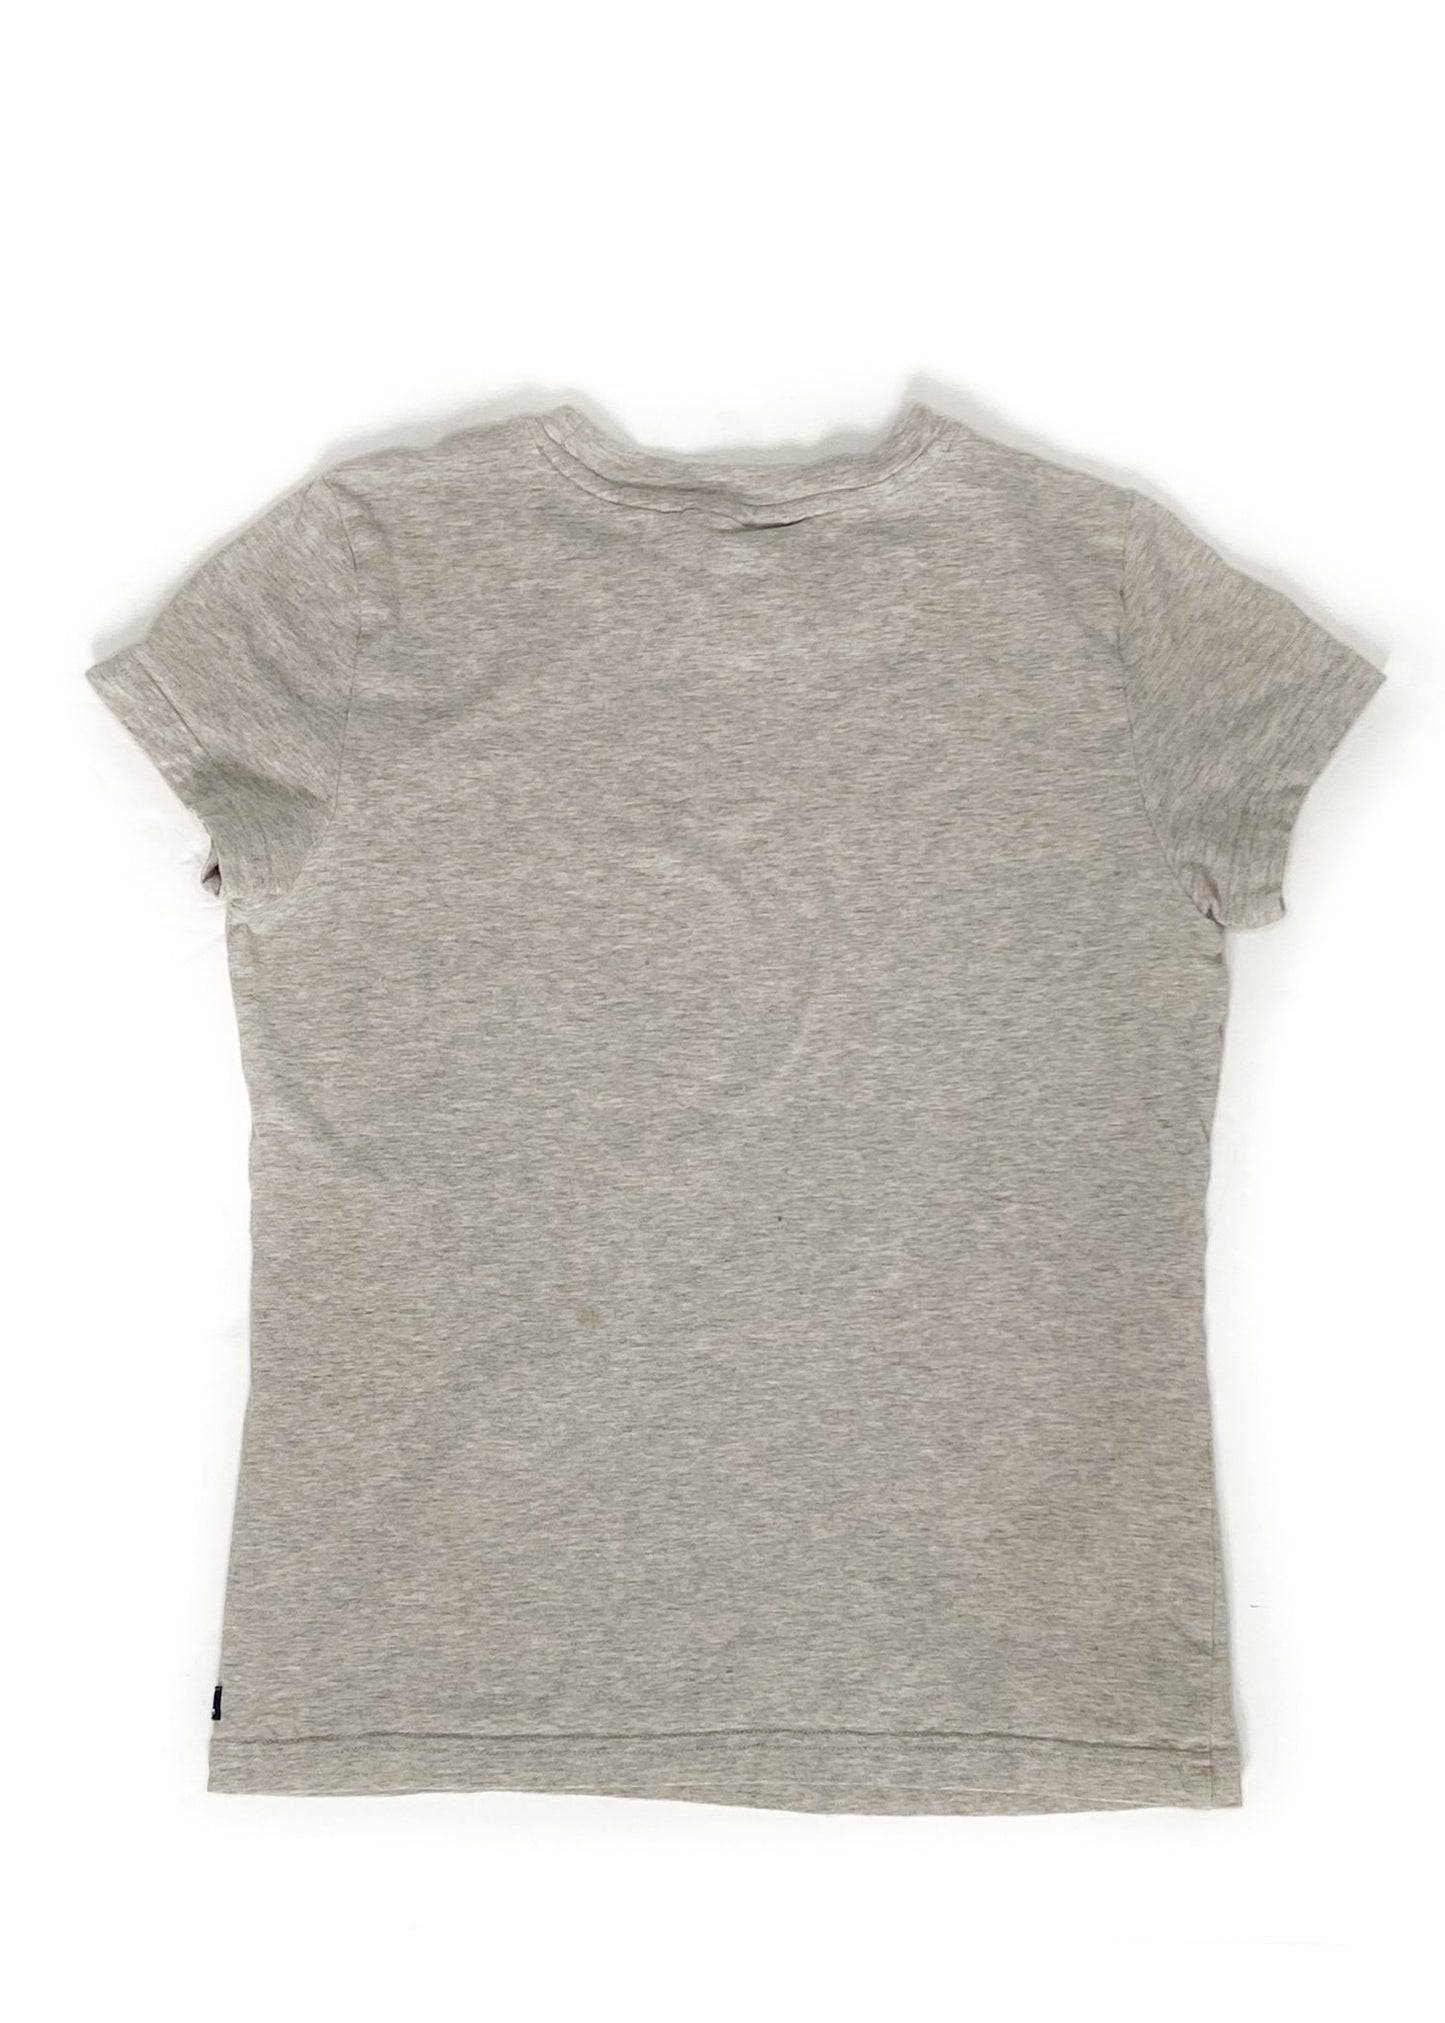 Ariat Short Sleeve Shirt - Grey - Youth Large